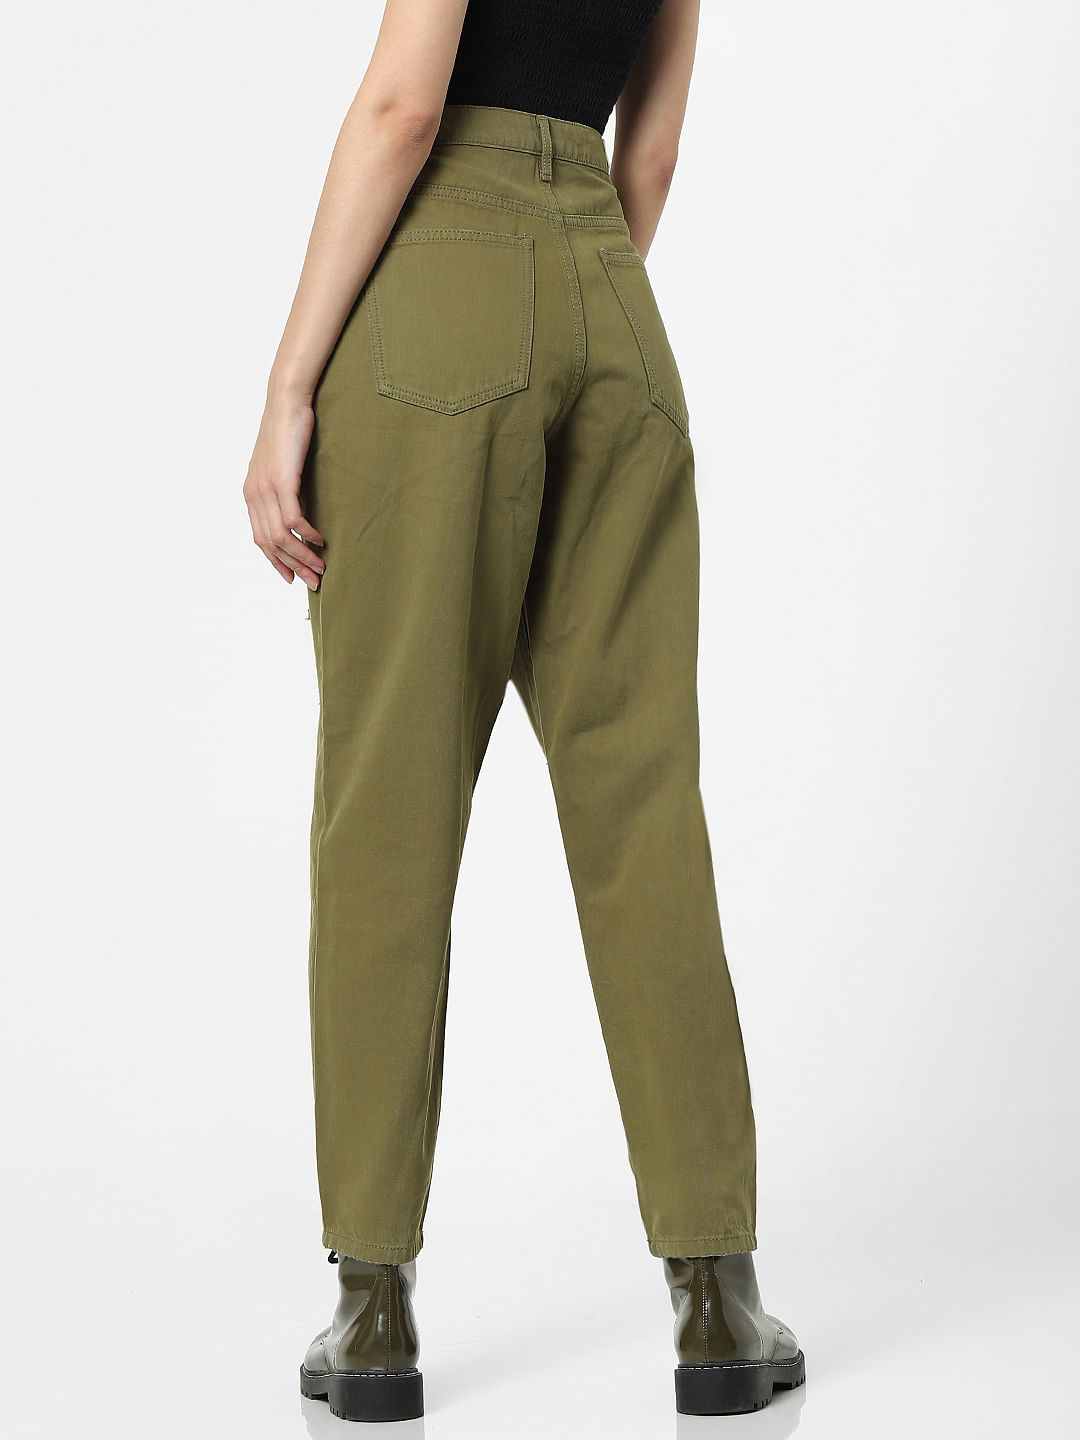 Green 36                  EU Bershka Cargo trousers discount 74% WOMEN FASHION Trousers Cargo trousers Print 